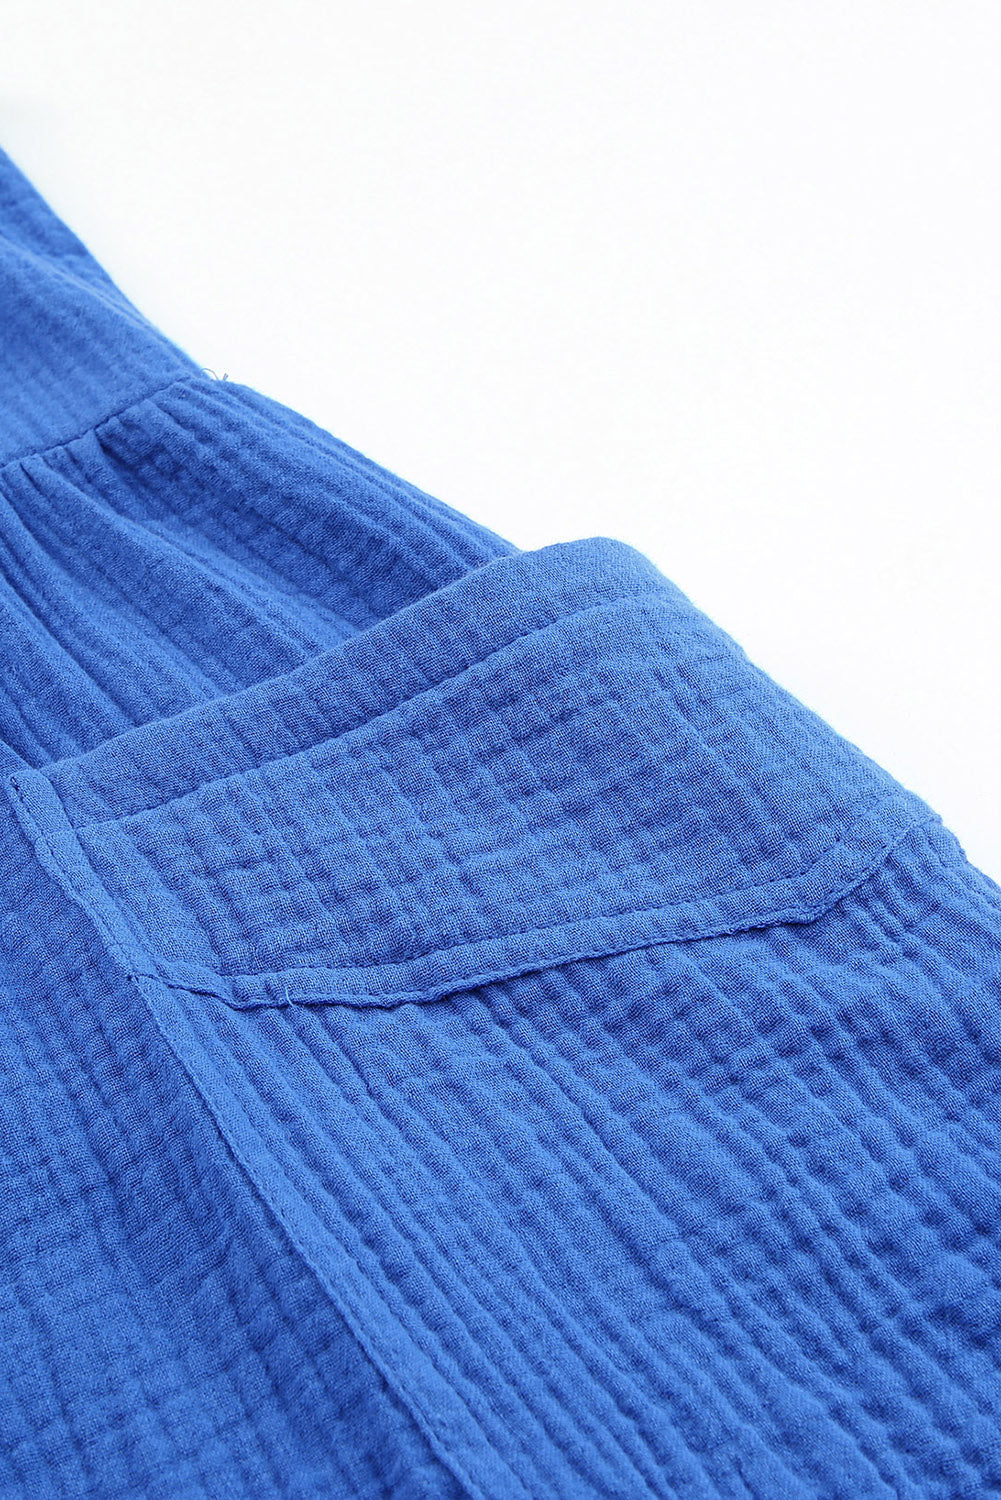 Široke hlače z modrimi teksturiranimi naramnicami z visokim pasom